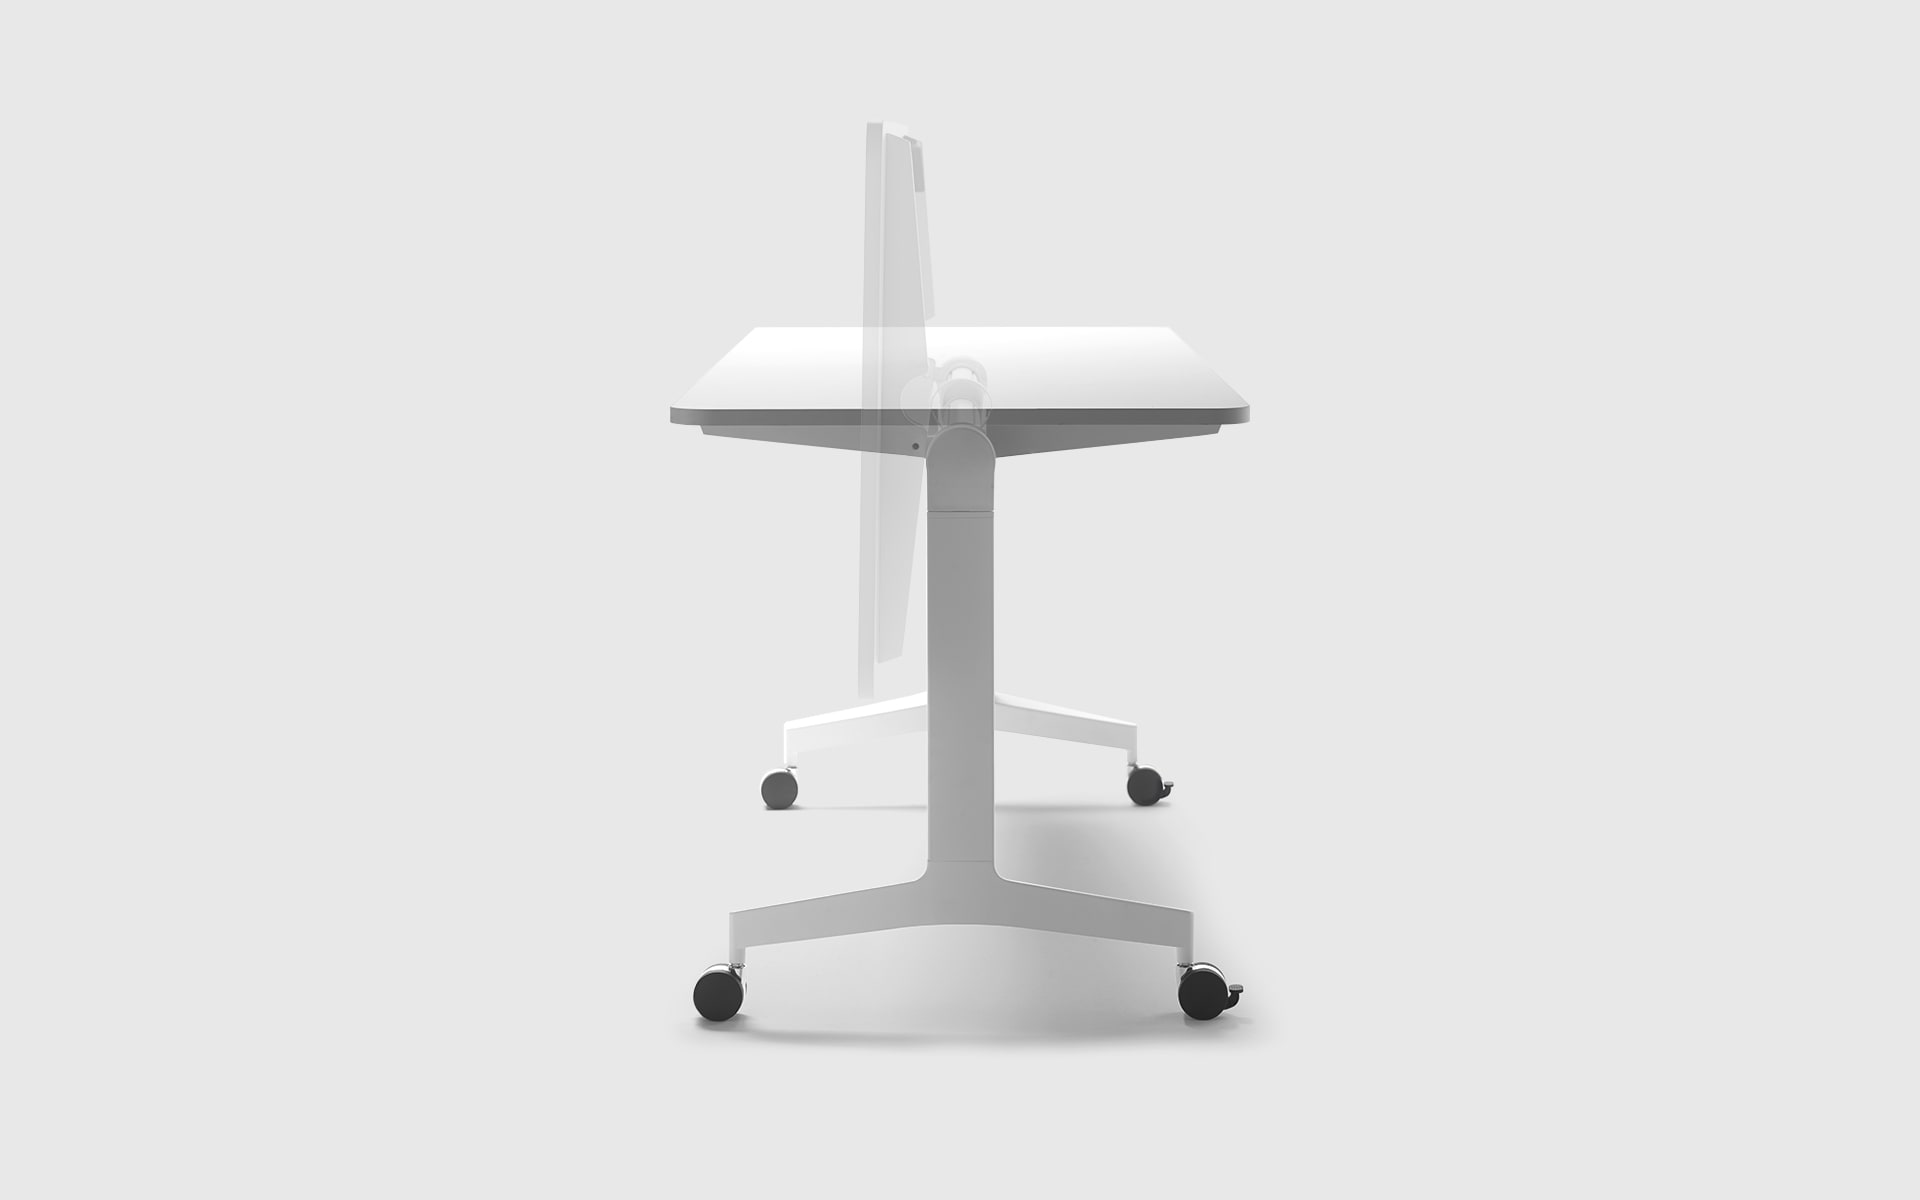 Demonstration der klappbaren Tischfläche des Forma 5 Folding Travel Klapptischs von ITO Design